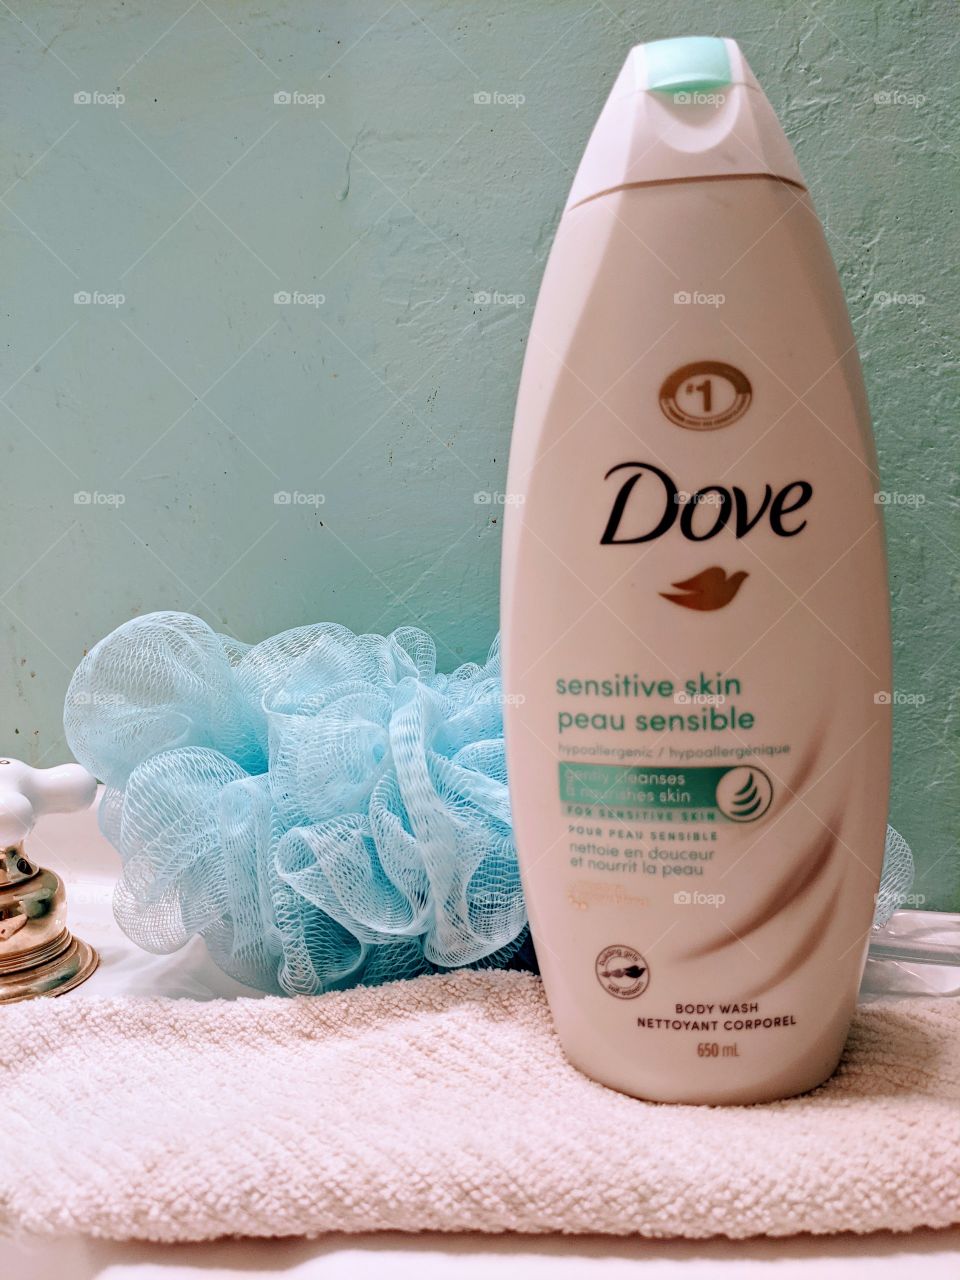 Dove body wash sensitive